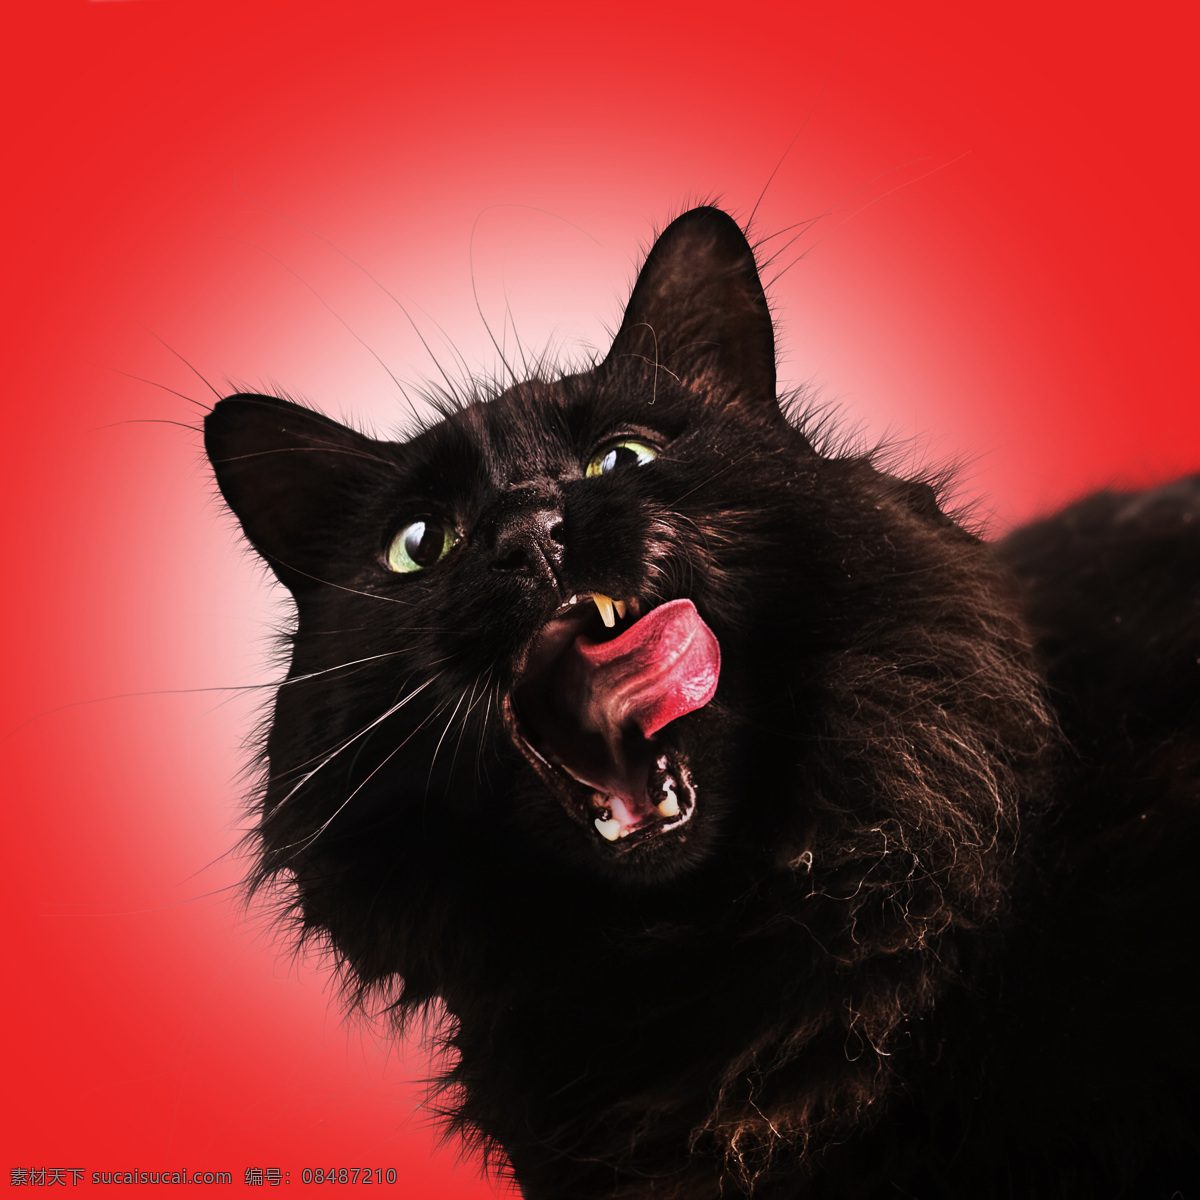 黑猫 宠物猫 张嘴 吐舌头 做鬼脸 红色背景 猫特写 宠物 家禽家畜 生物世界